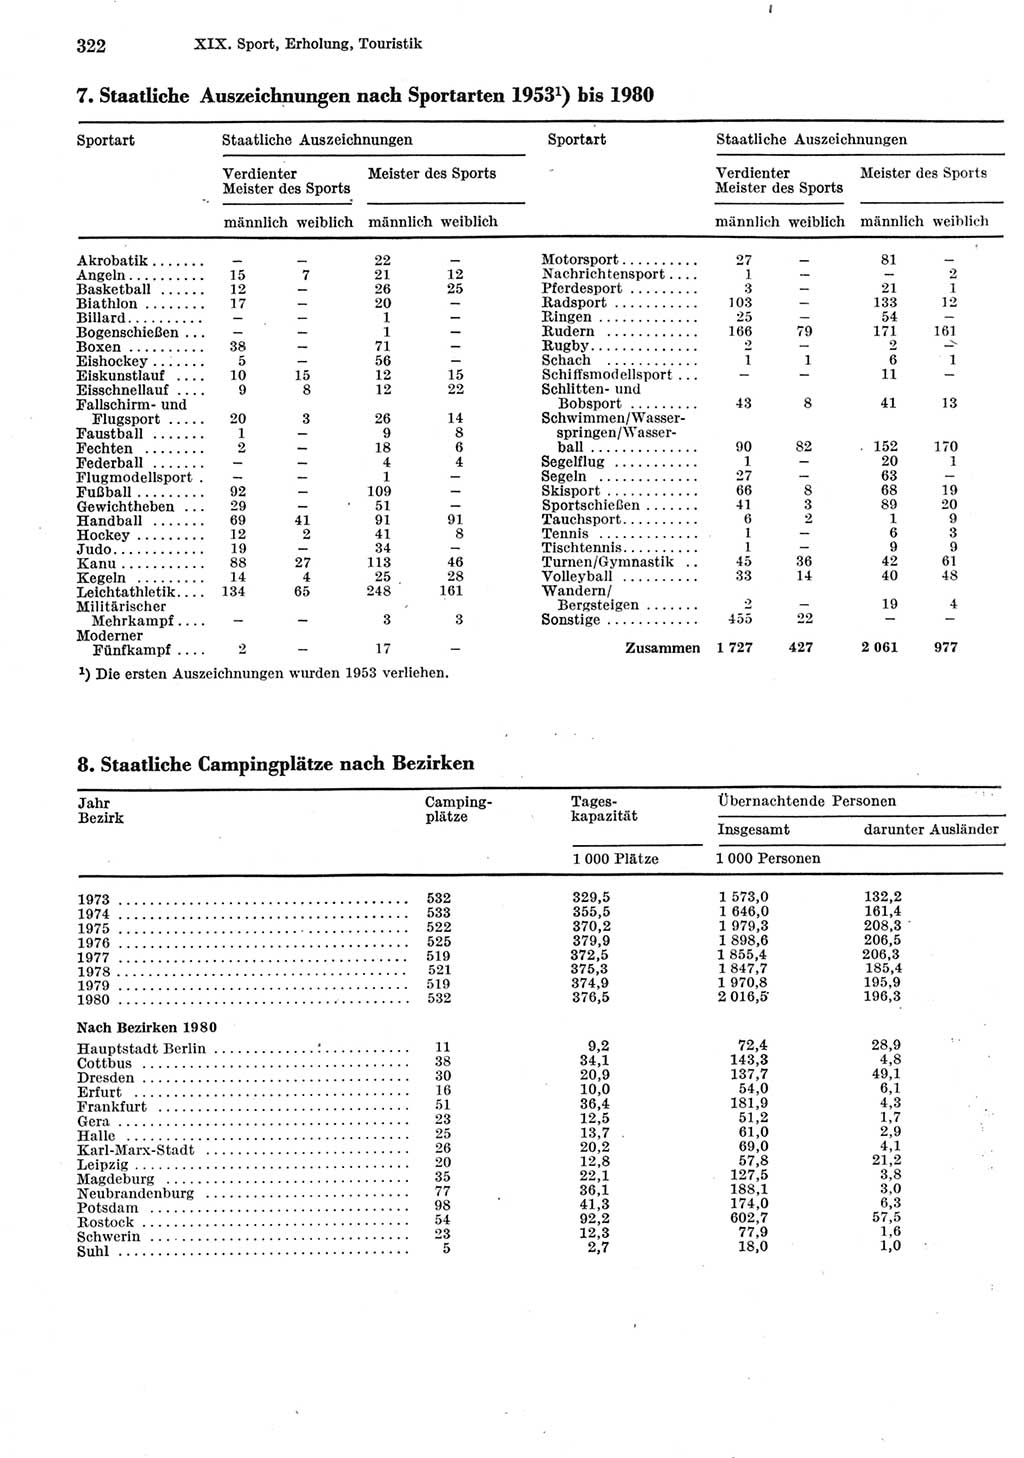 Statistisches Jahrbuch der Deutschen Demokratischen Republik (DDR) 1981, Seite 322 (Stat. Jb. DDR 1981, S. 322)